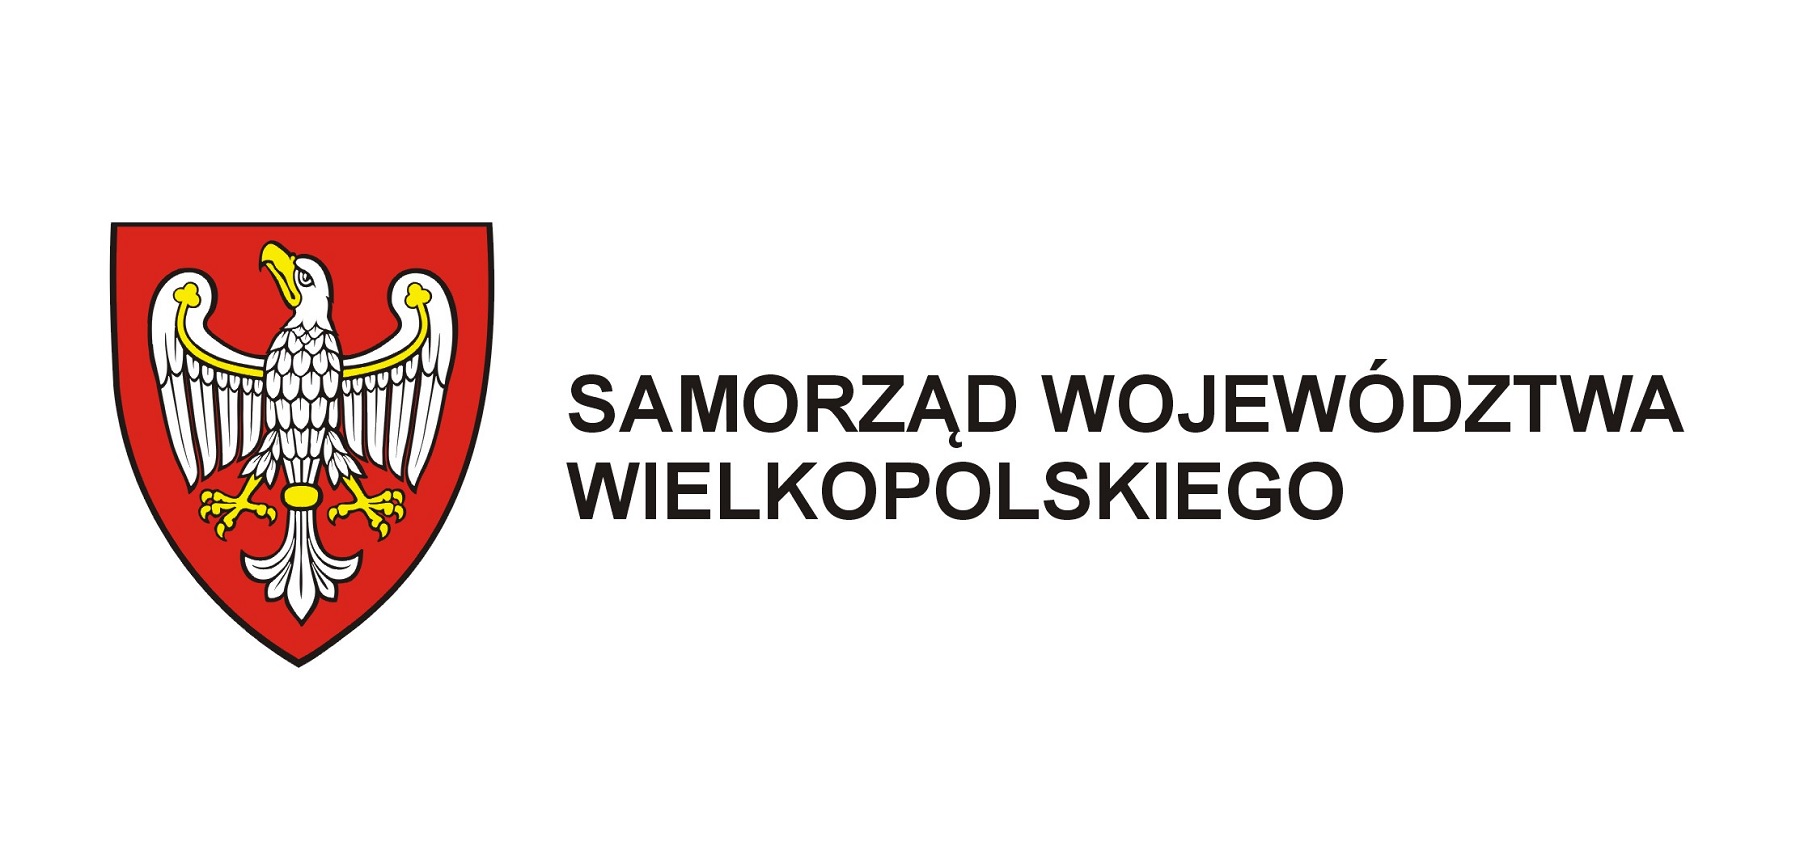 Samorząd Województwa Wielkopolskiego